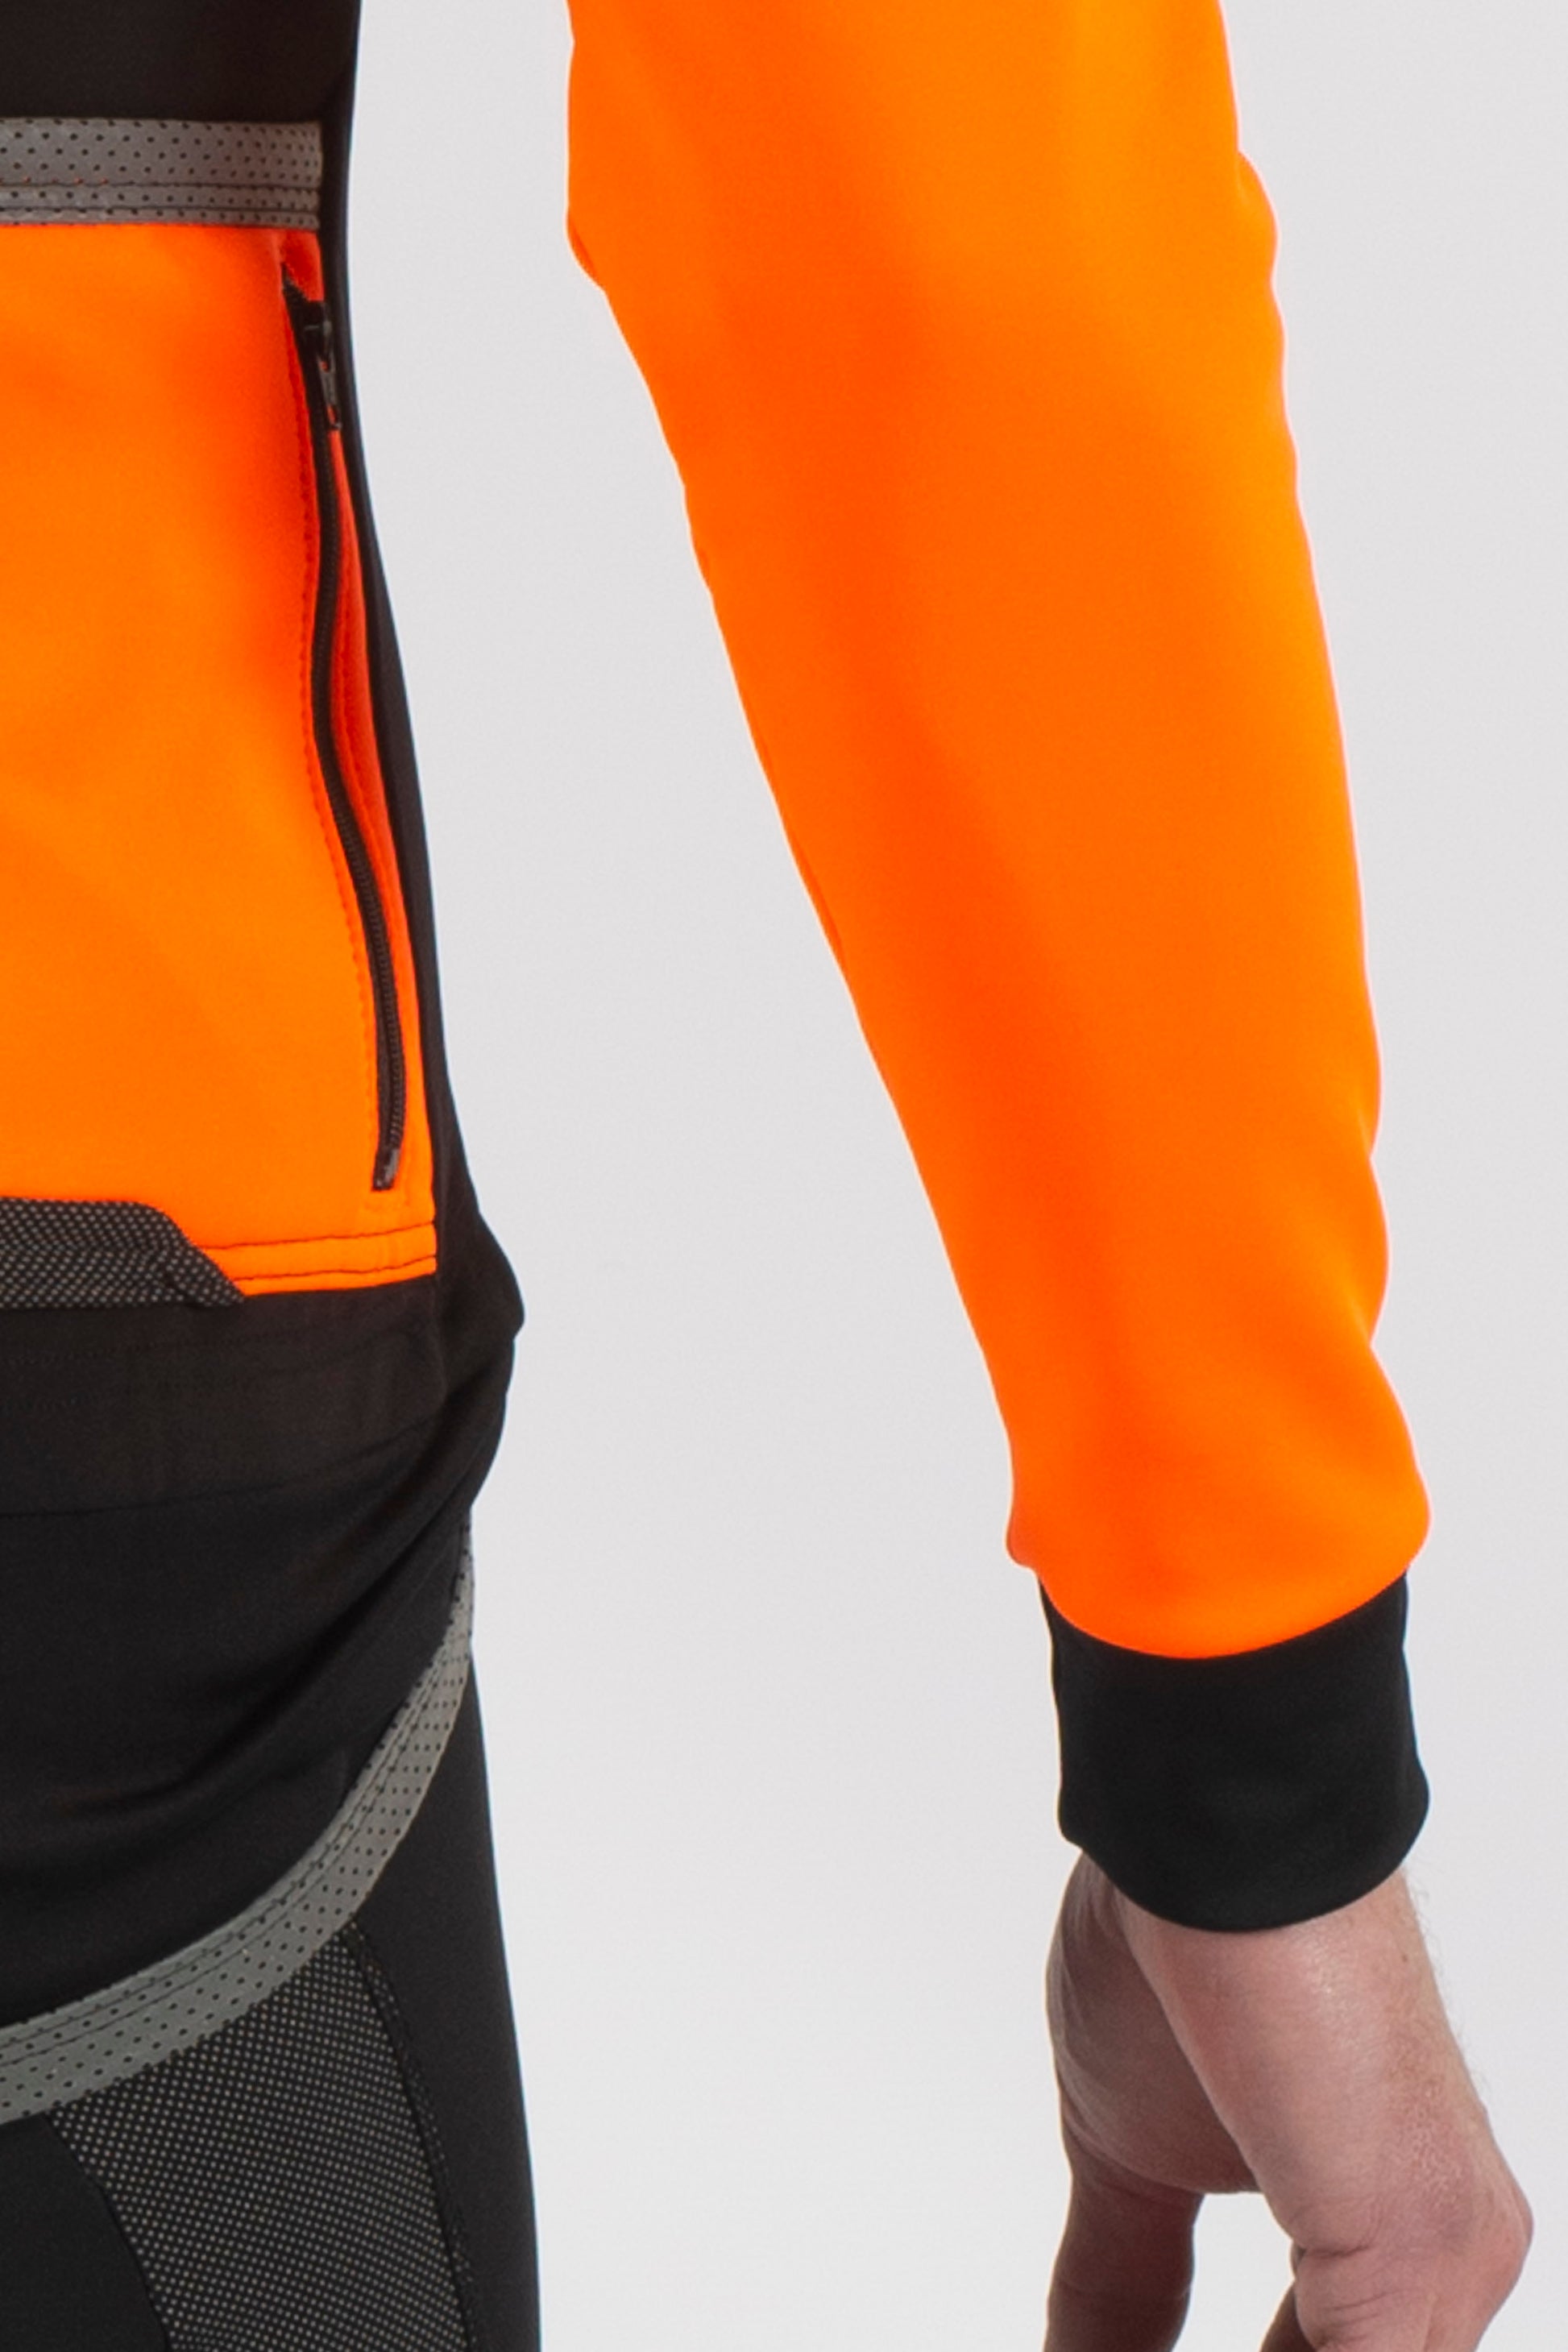 Aqua Pro Extreme Jacket - Orange - Lusso Cycle Wear